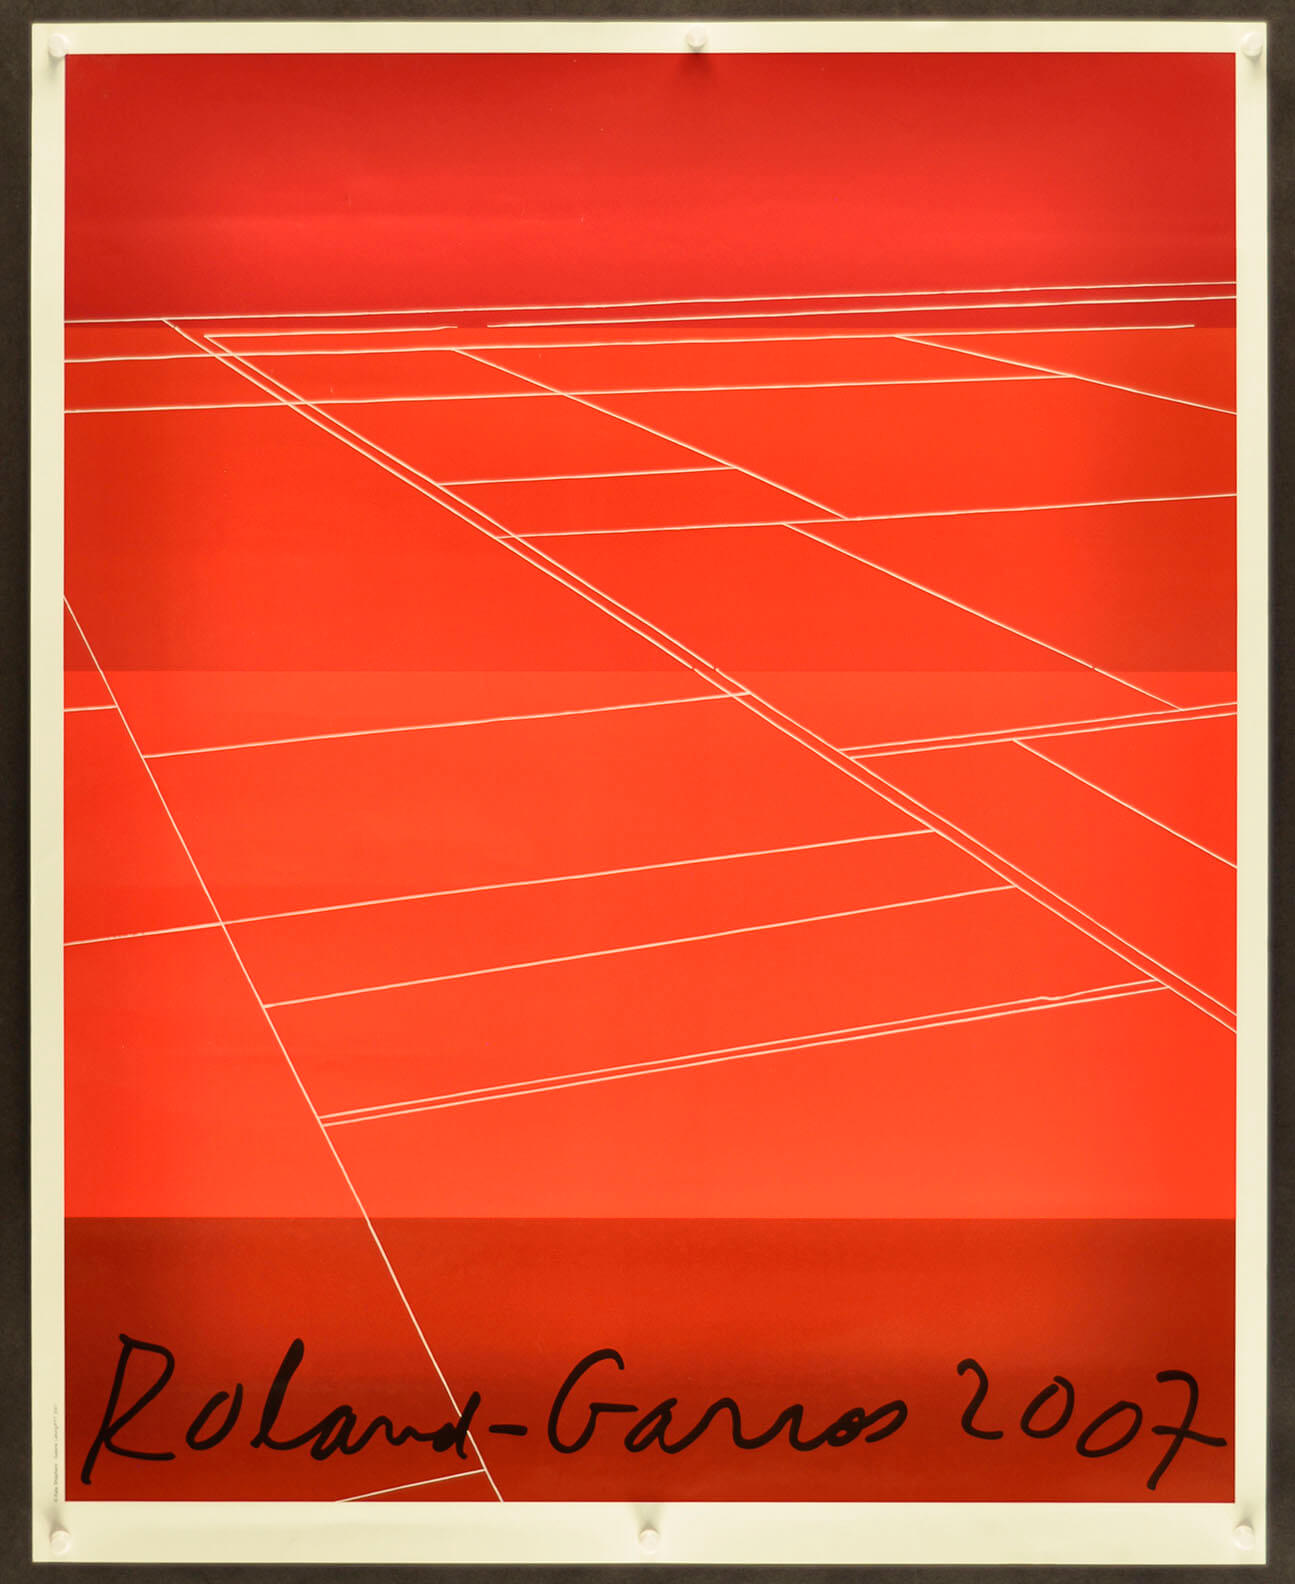 Roland Garros 2007 Event Poster